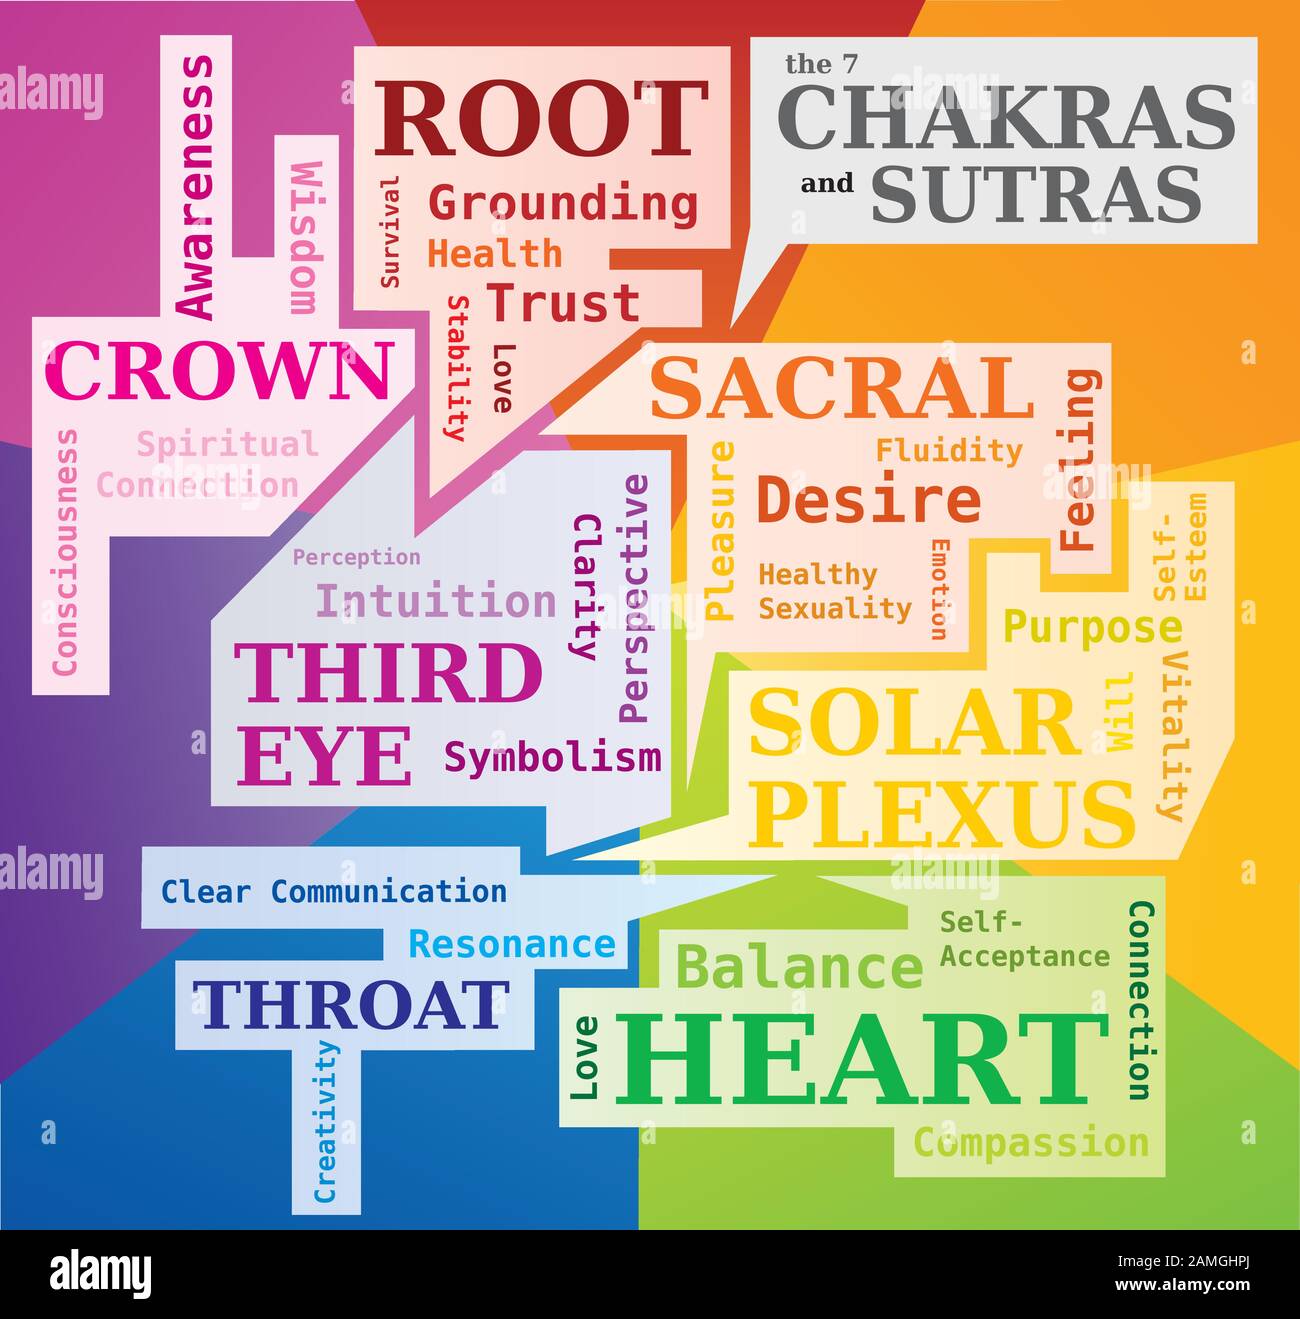 Le nuage de mots de 7 Chakras montrant leur Sens et Sutras - langue anglaise Illustration de Vecteur